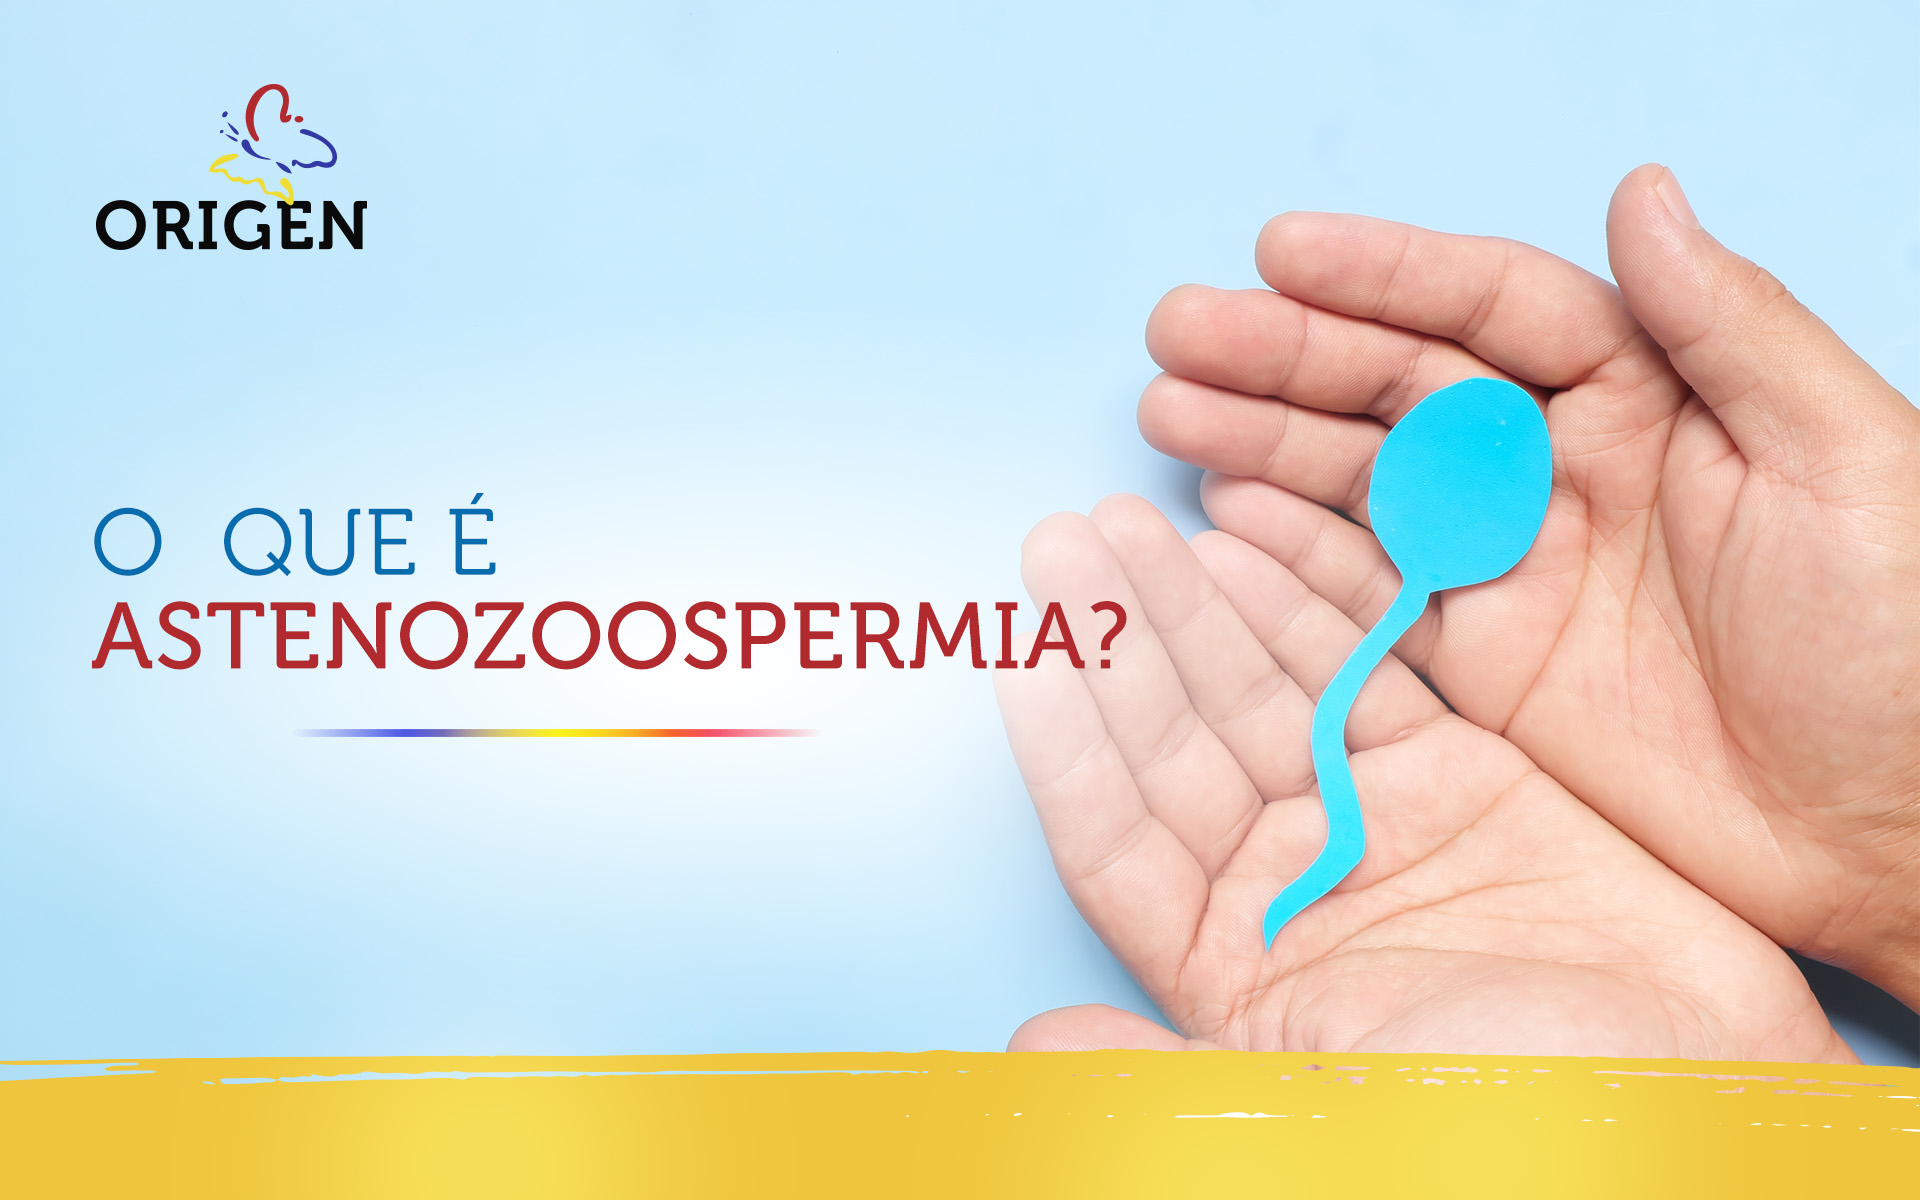 O que é astenozoospermia?